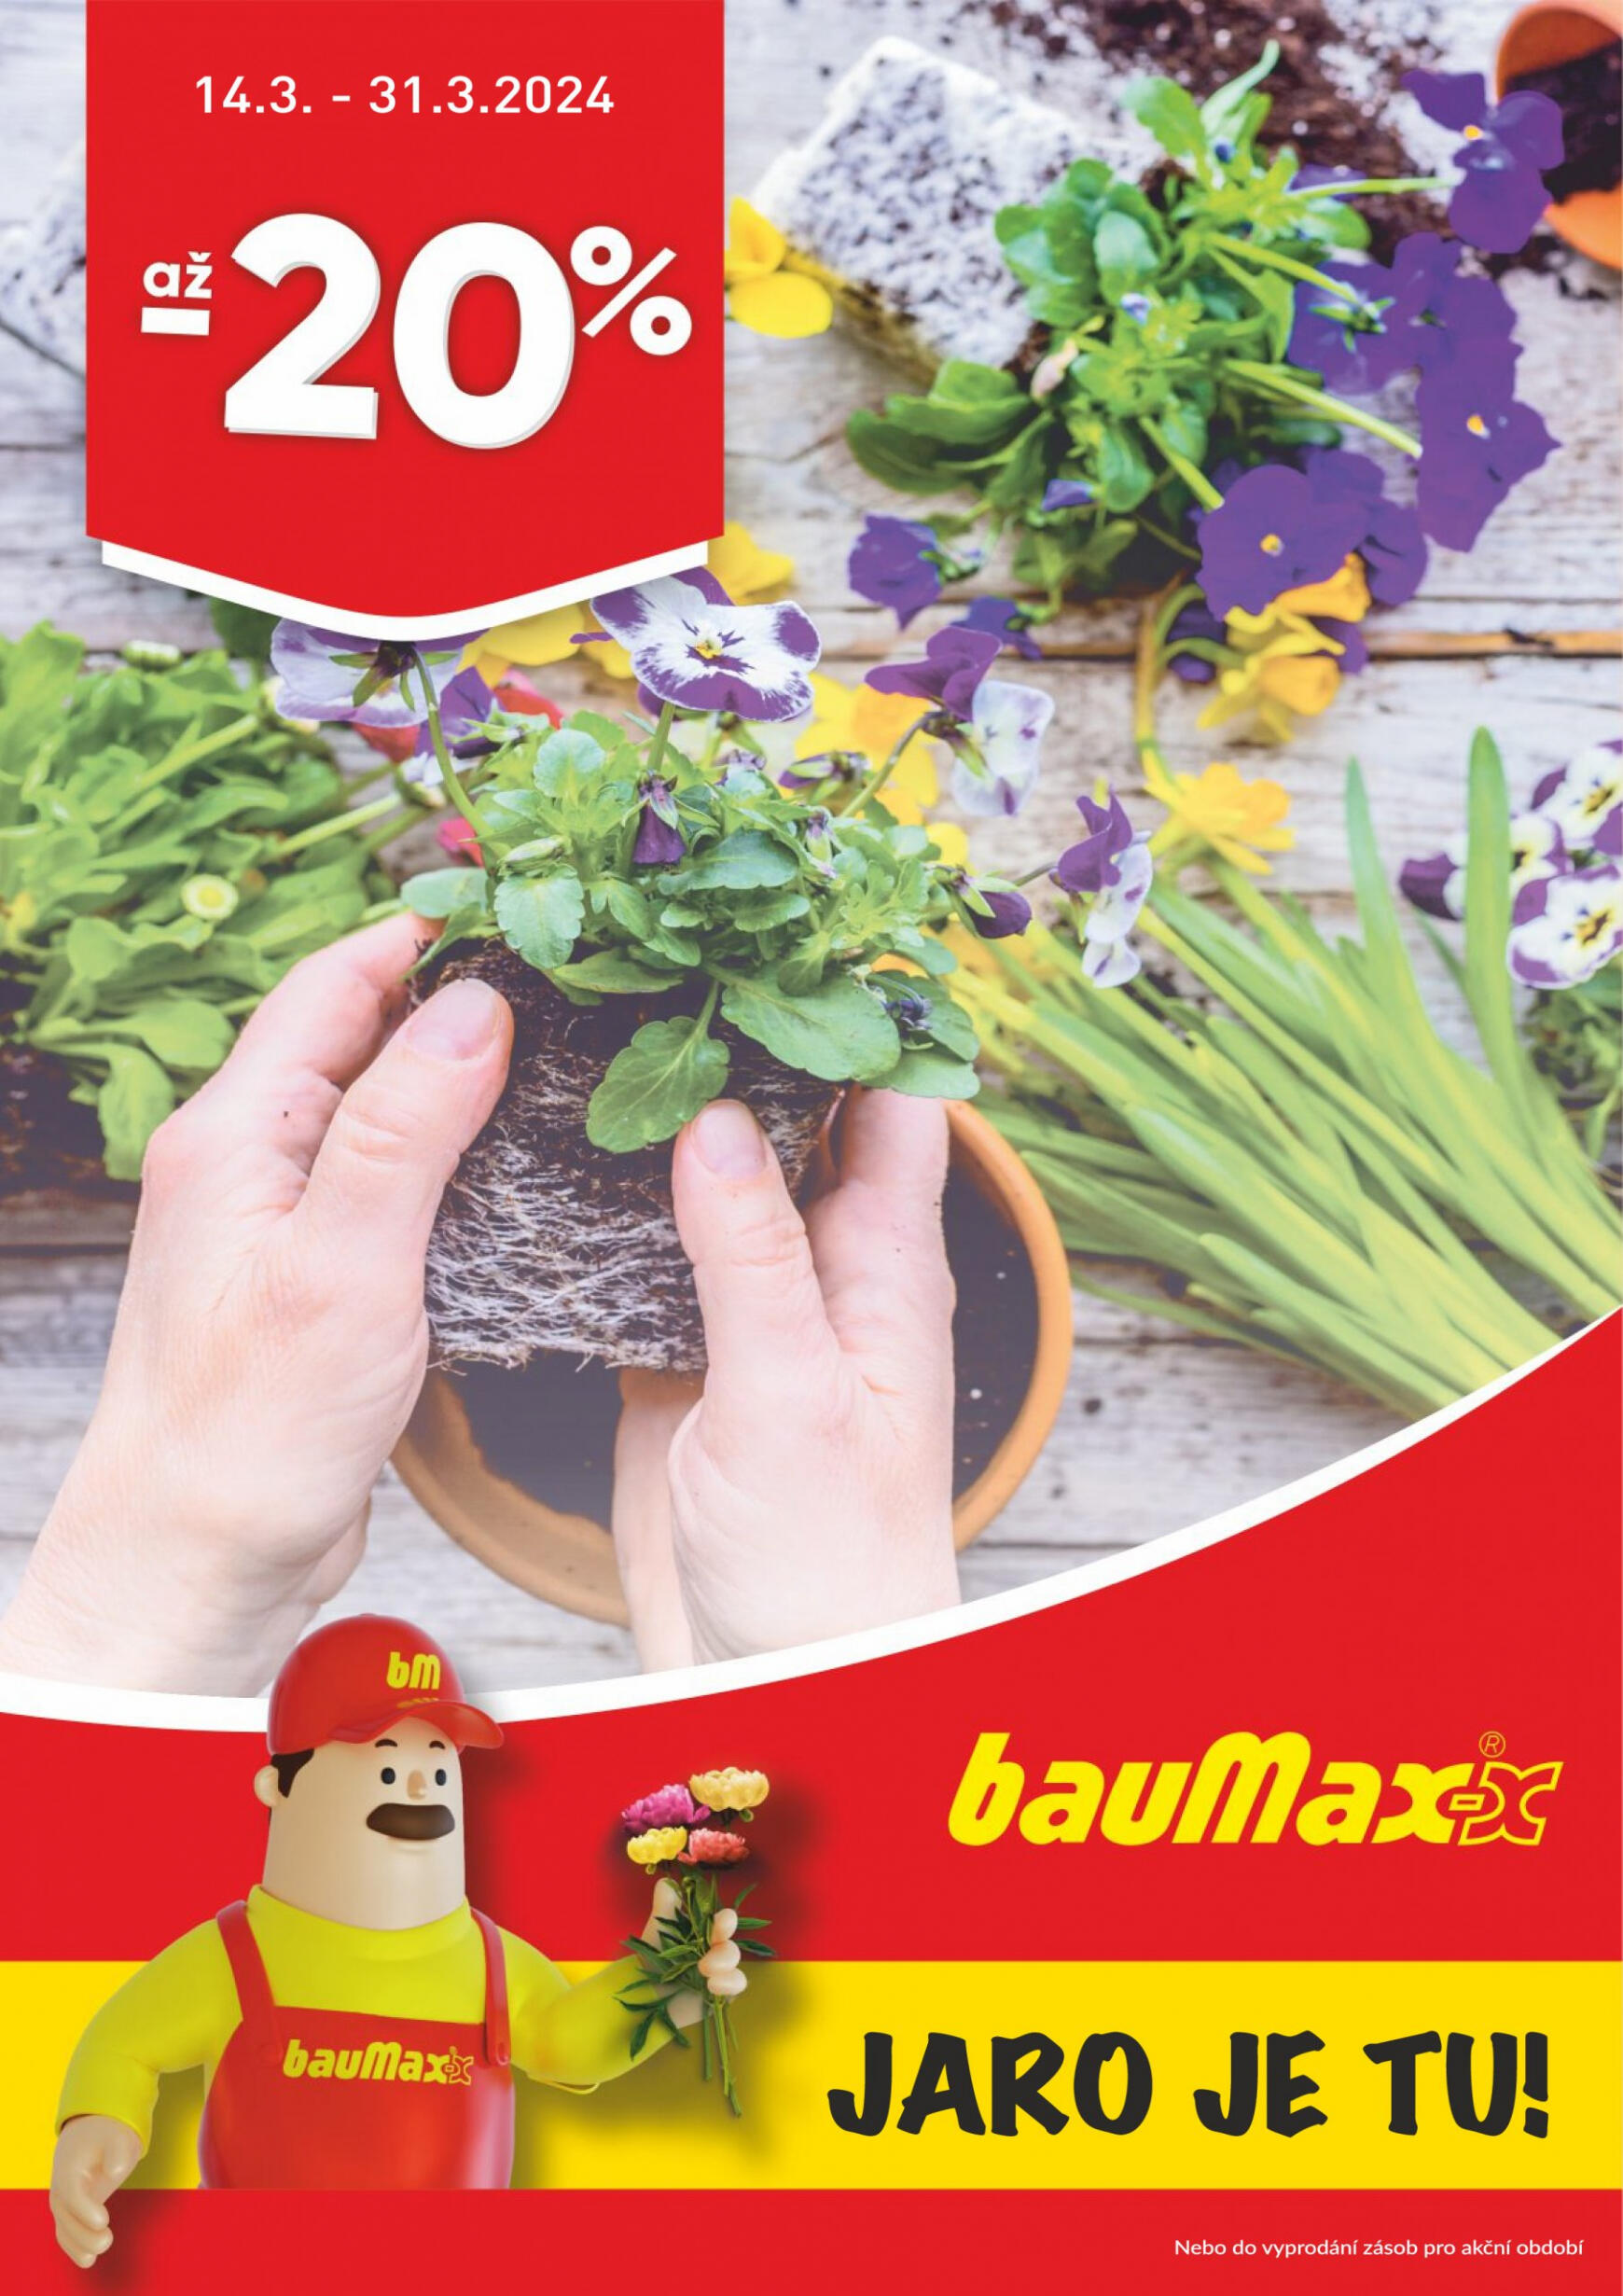 baumax - Baumax platný od 14.03.2024 - page: 1